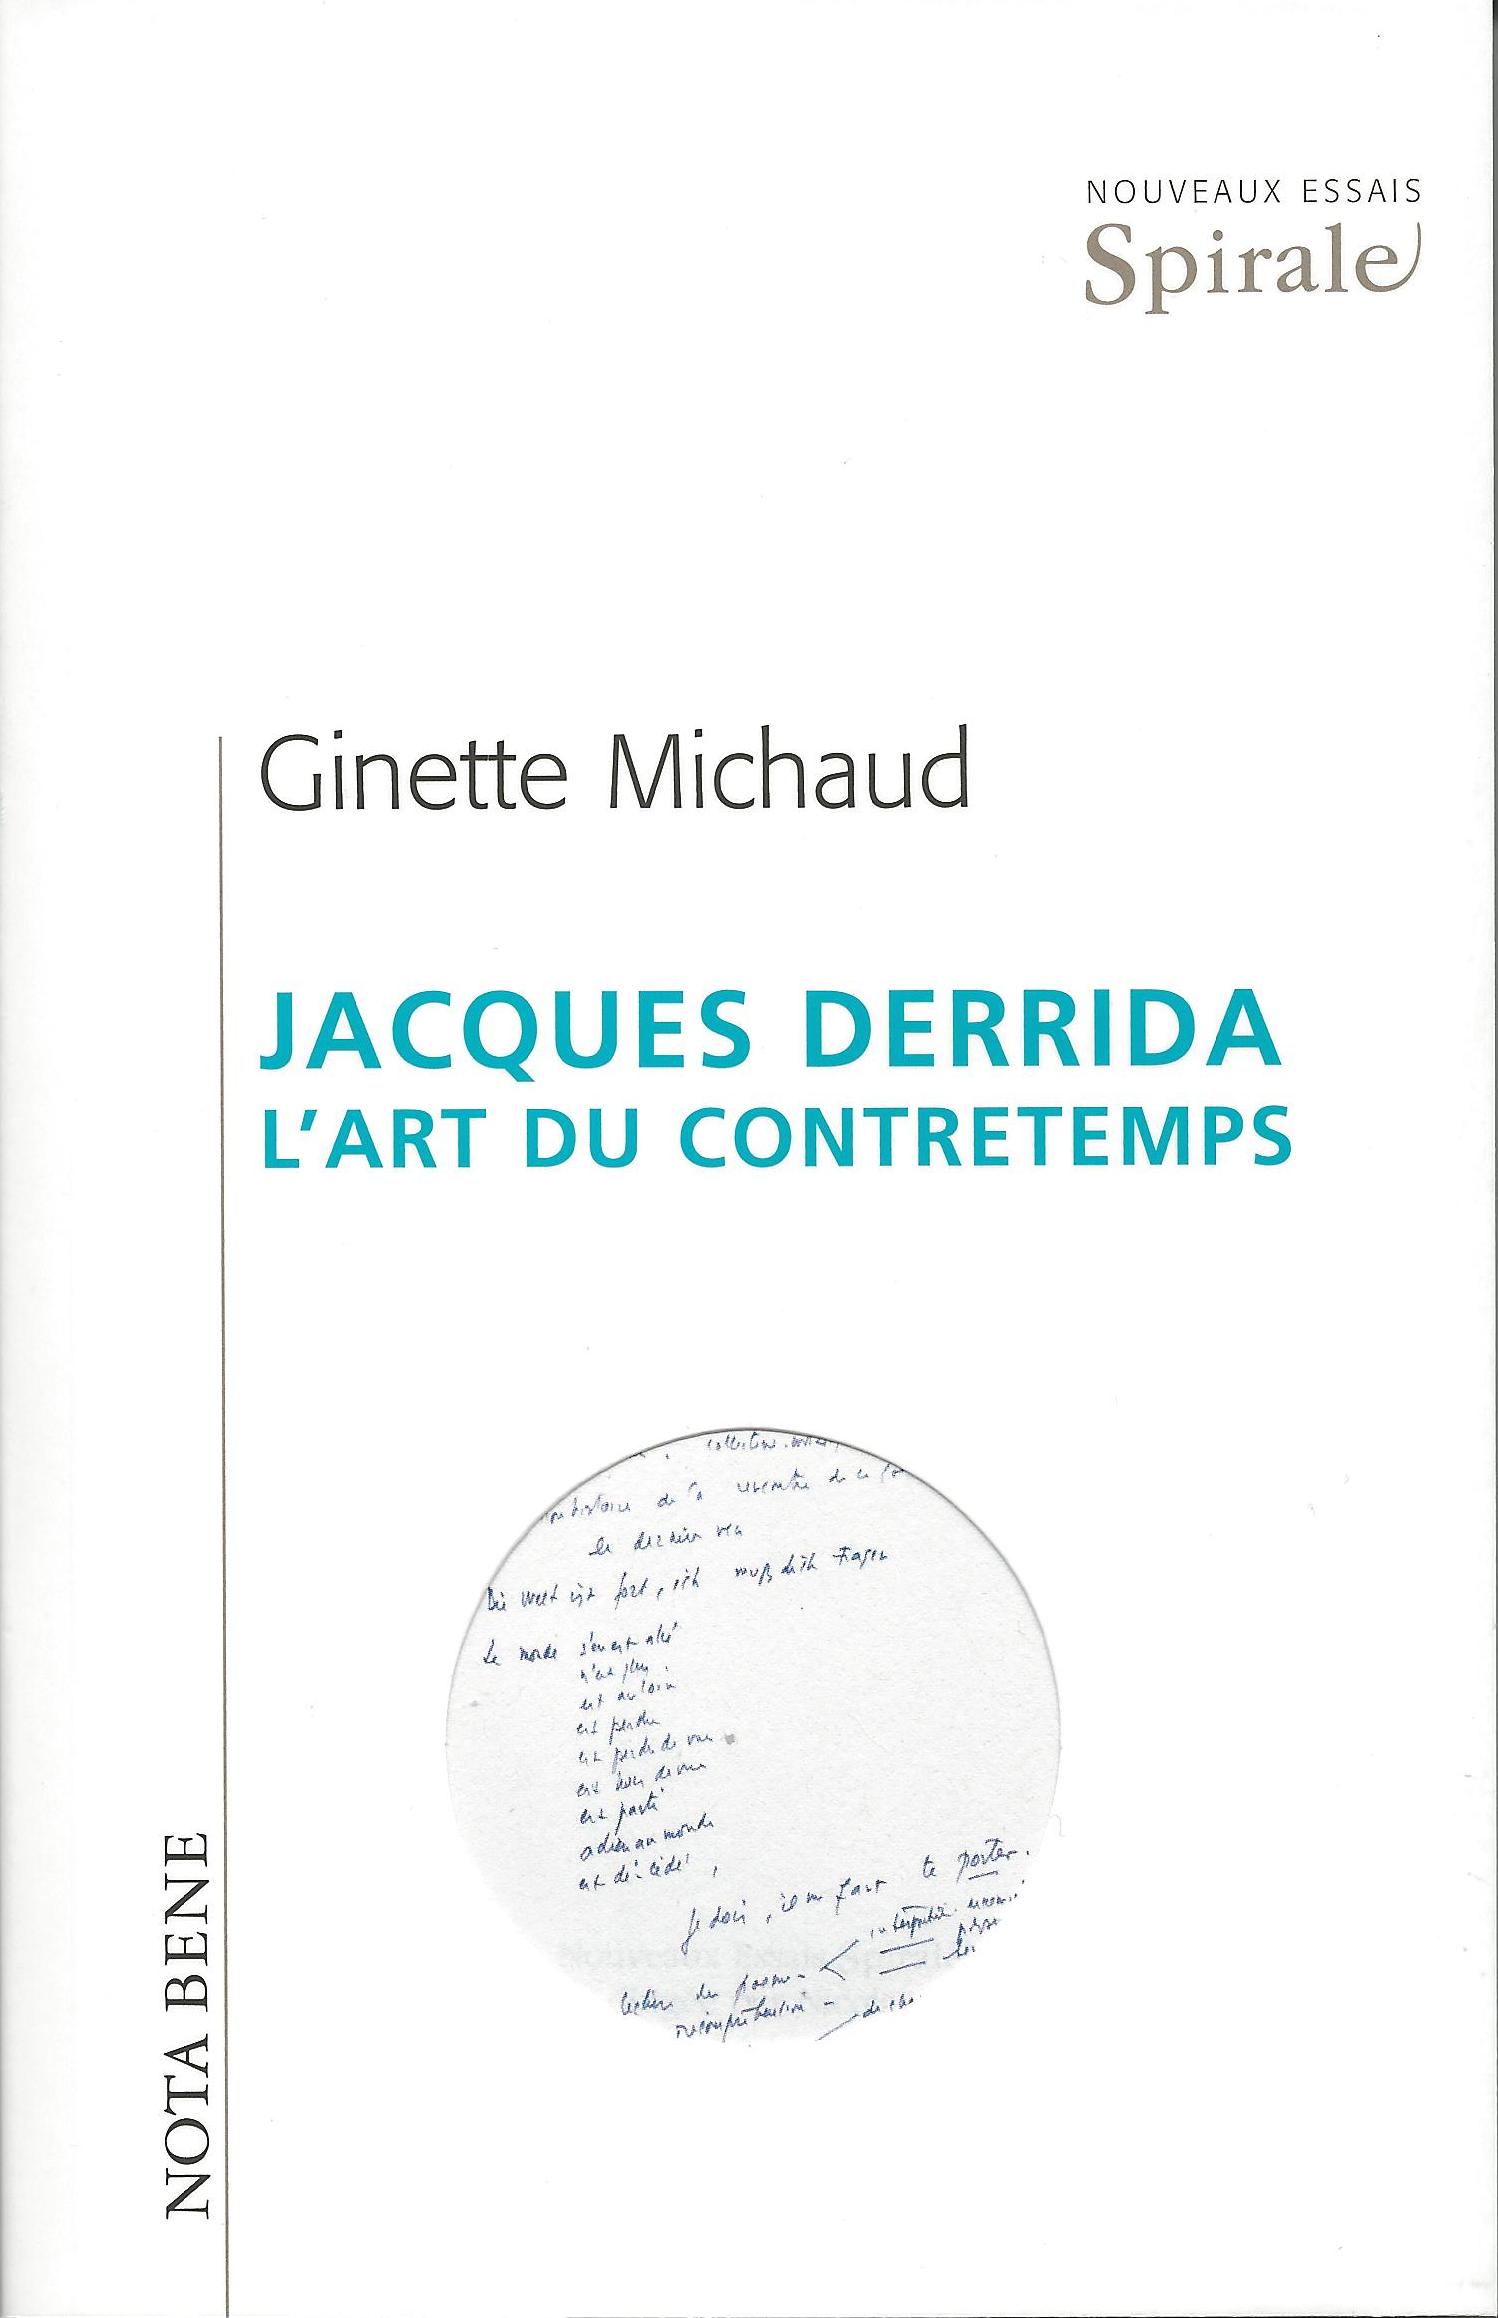 Jacques Derrida. L’art du contretemps